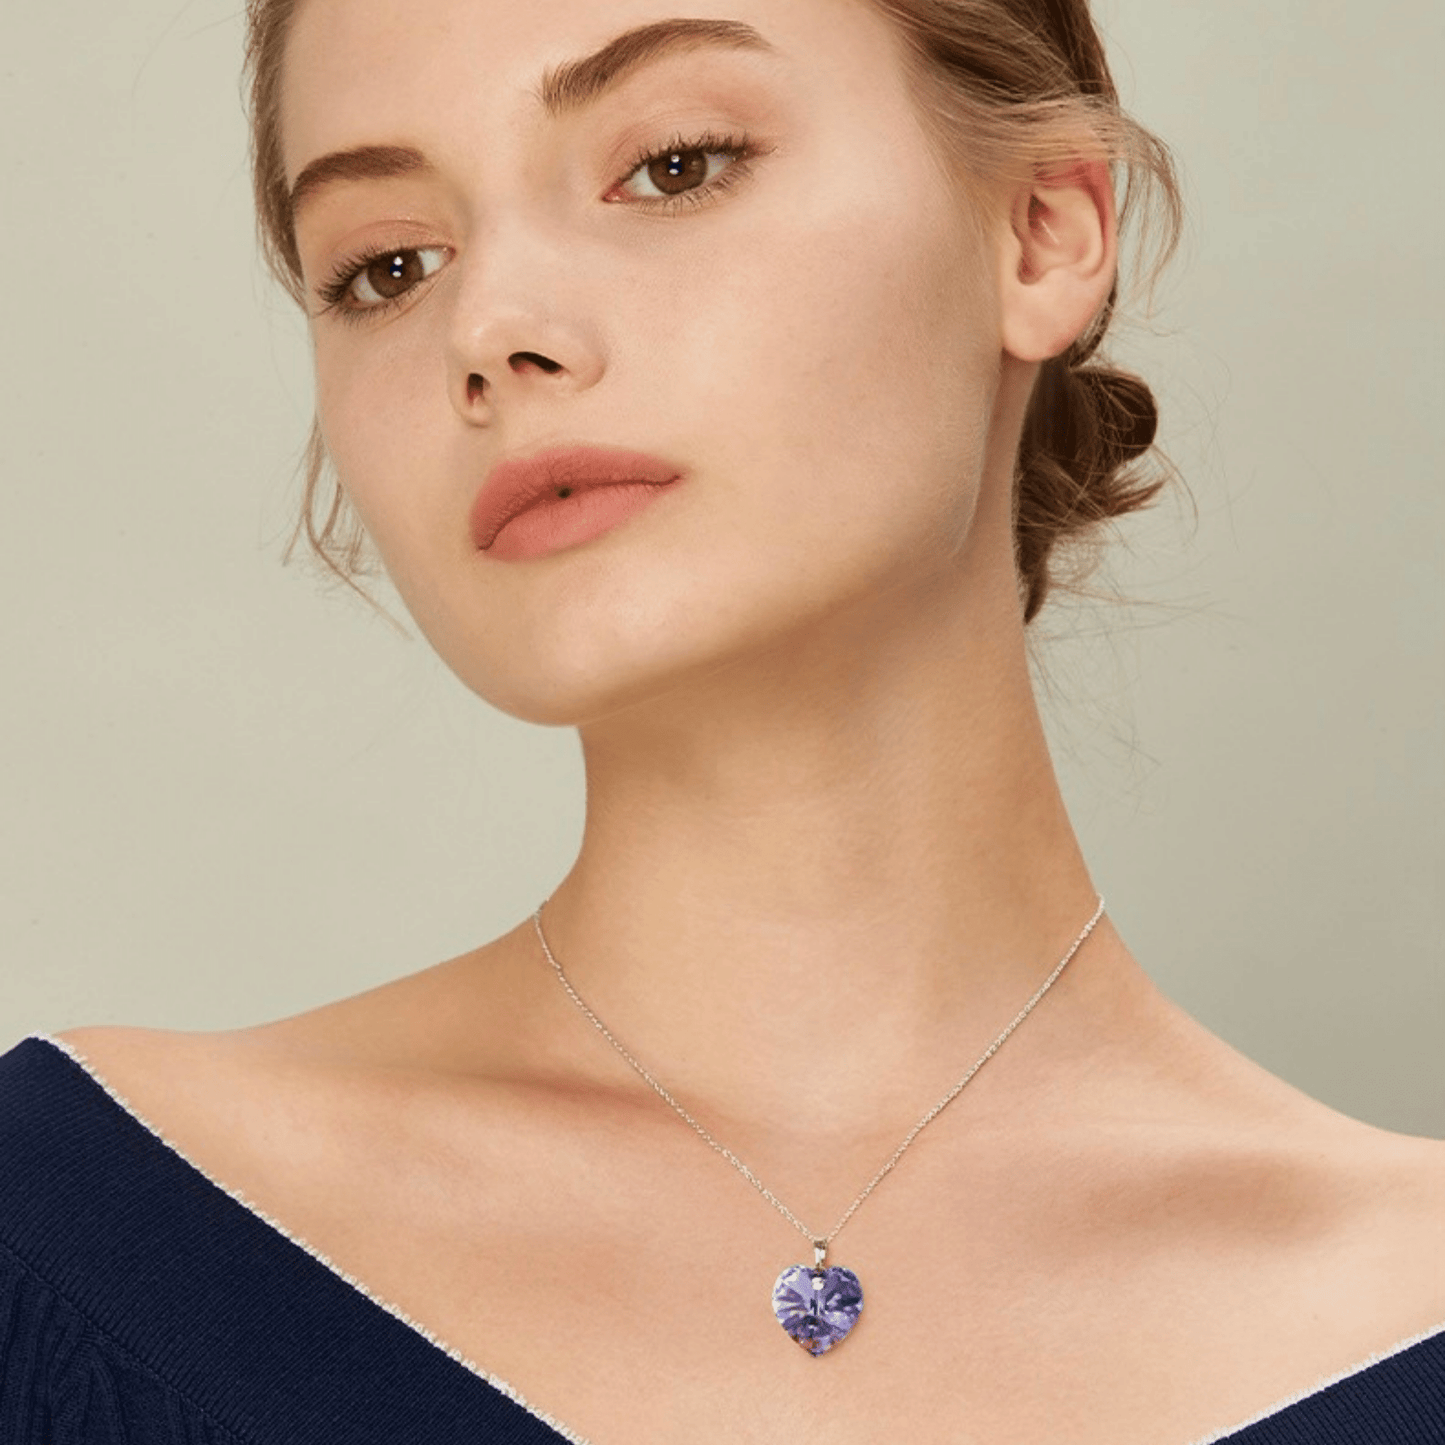 Elegant charming amethyst crystal necklace